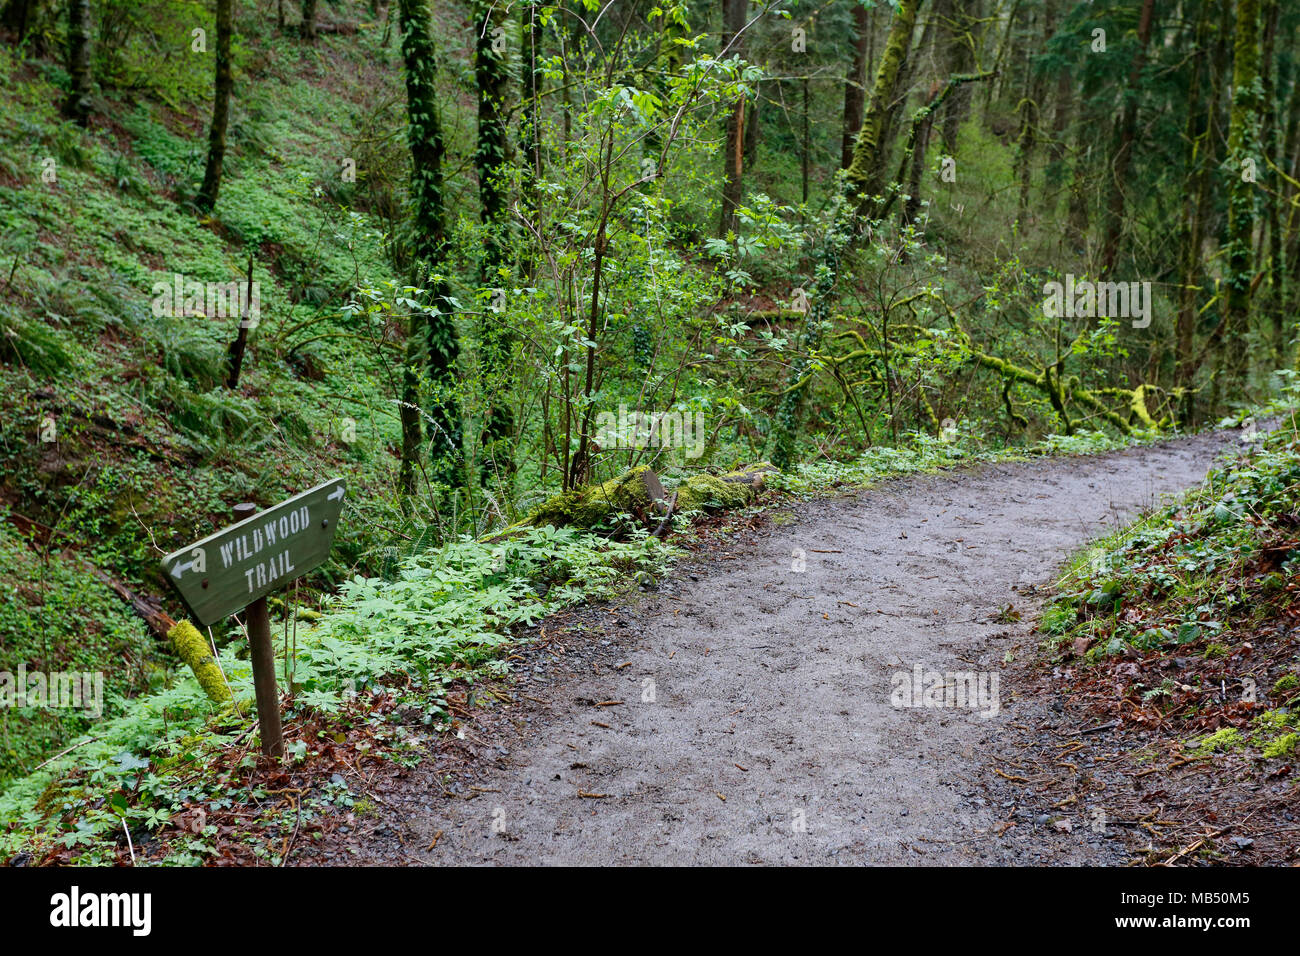 Le sentier Wildwood Trail à Forest Park, Portland, Oregon. Un sentier de randonnée bien entretenu serpentant dans un parc urbain. Banque D'Images